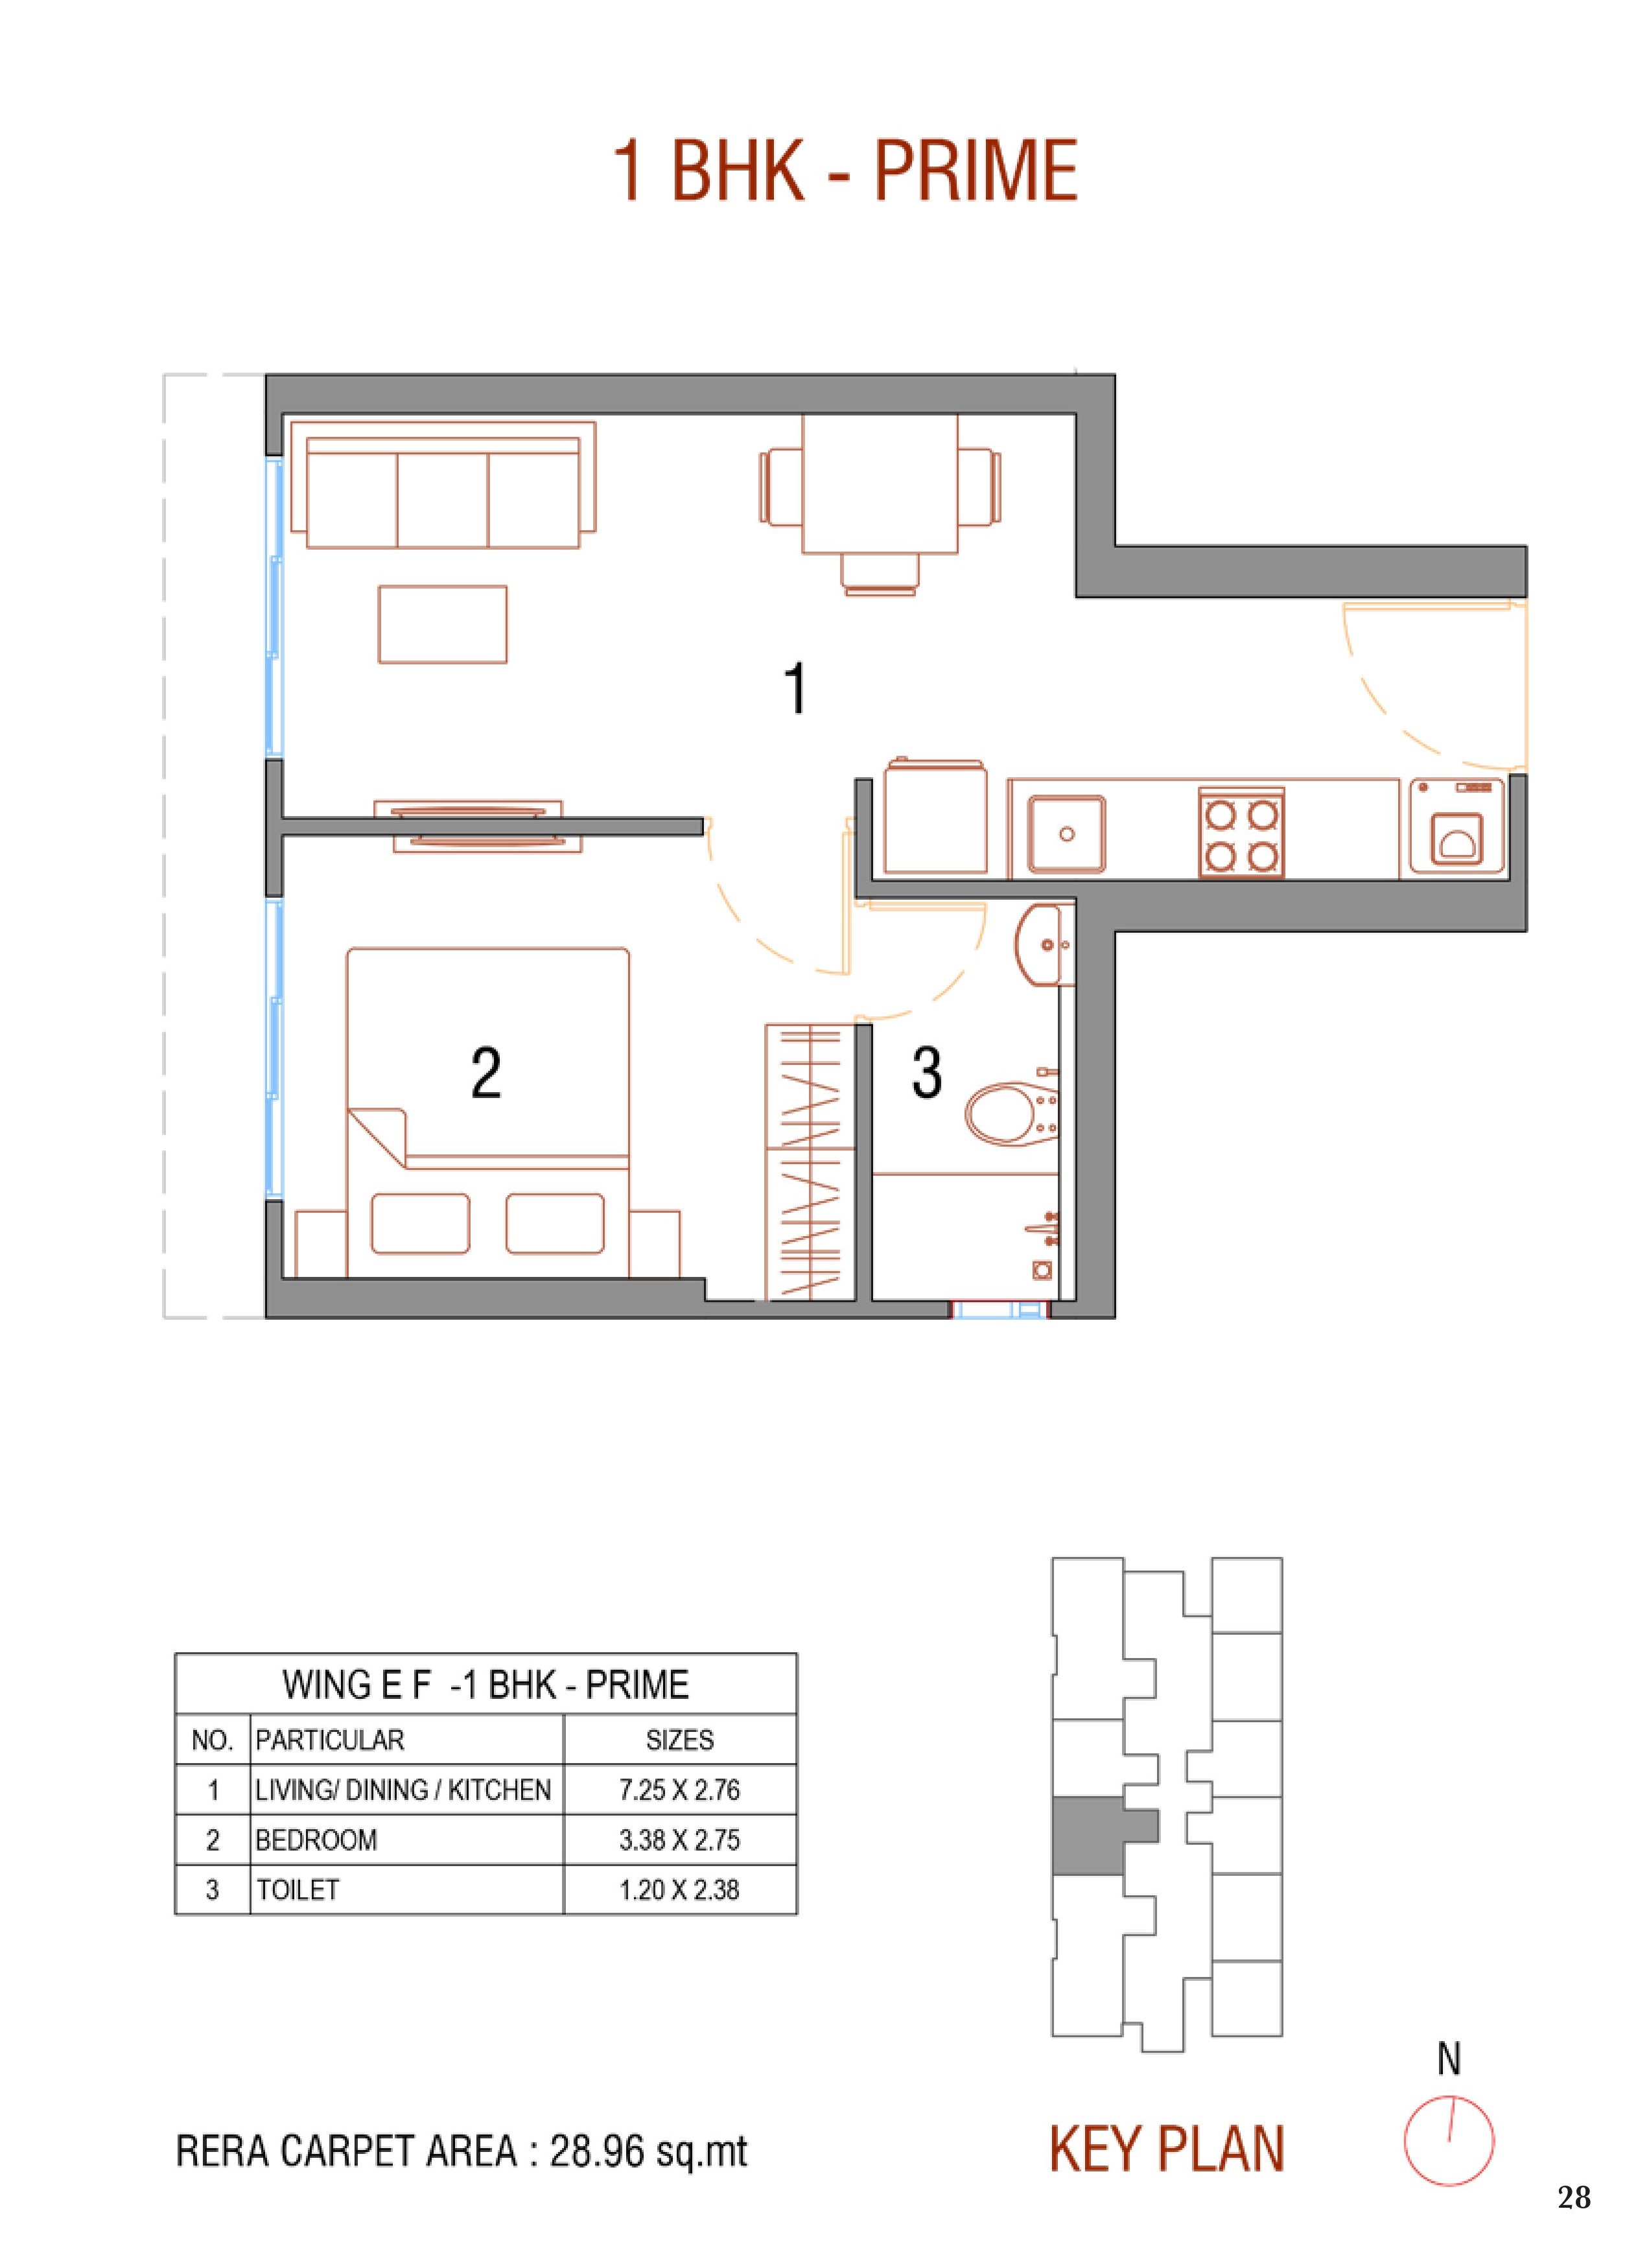 UK Luxecity Kandivali Floor Plan & Unit Plan